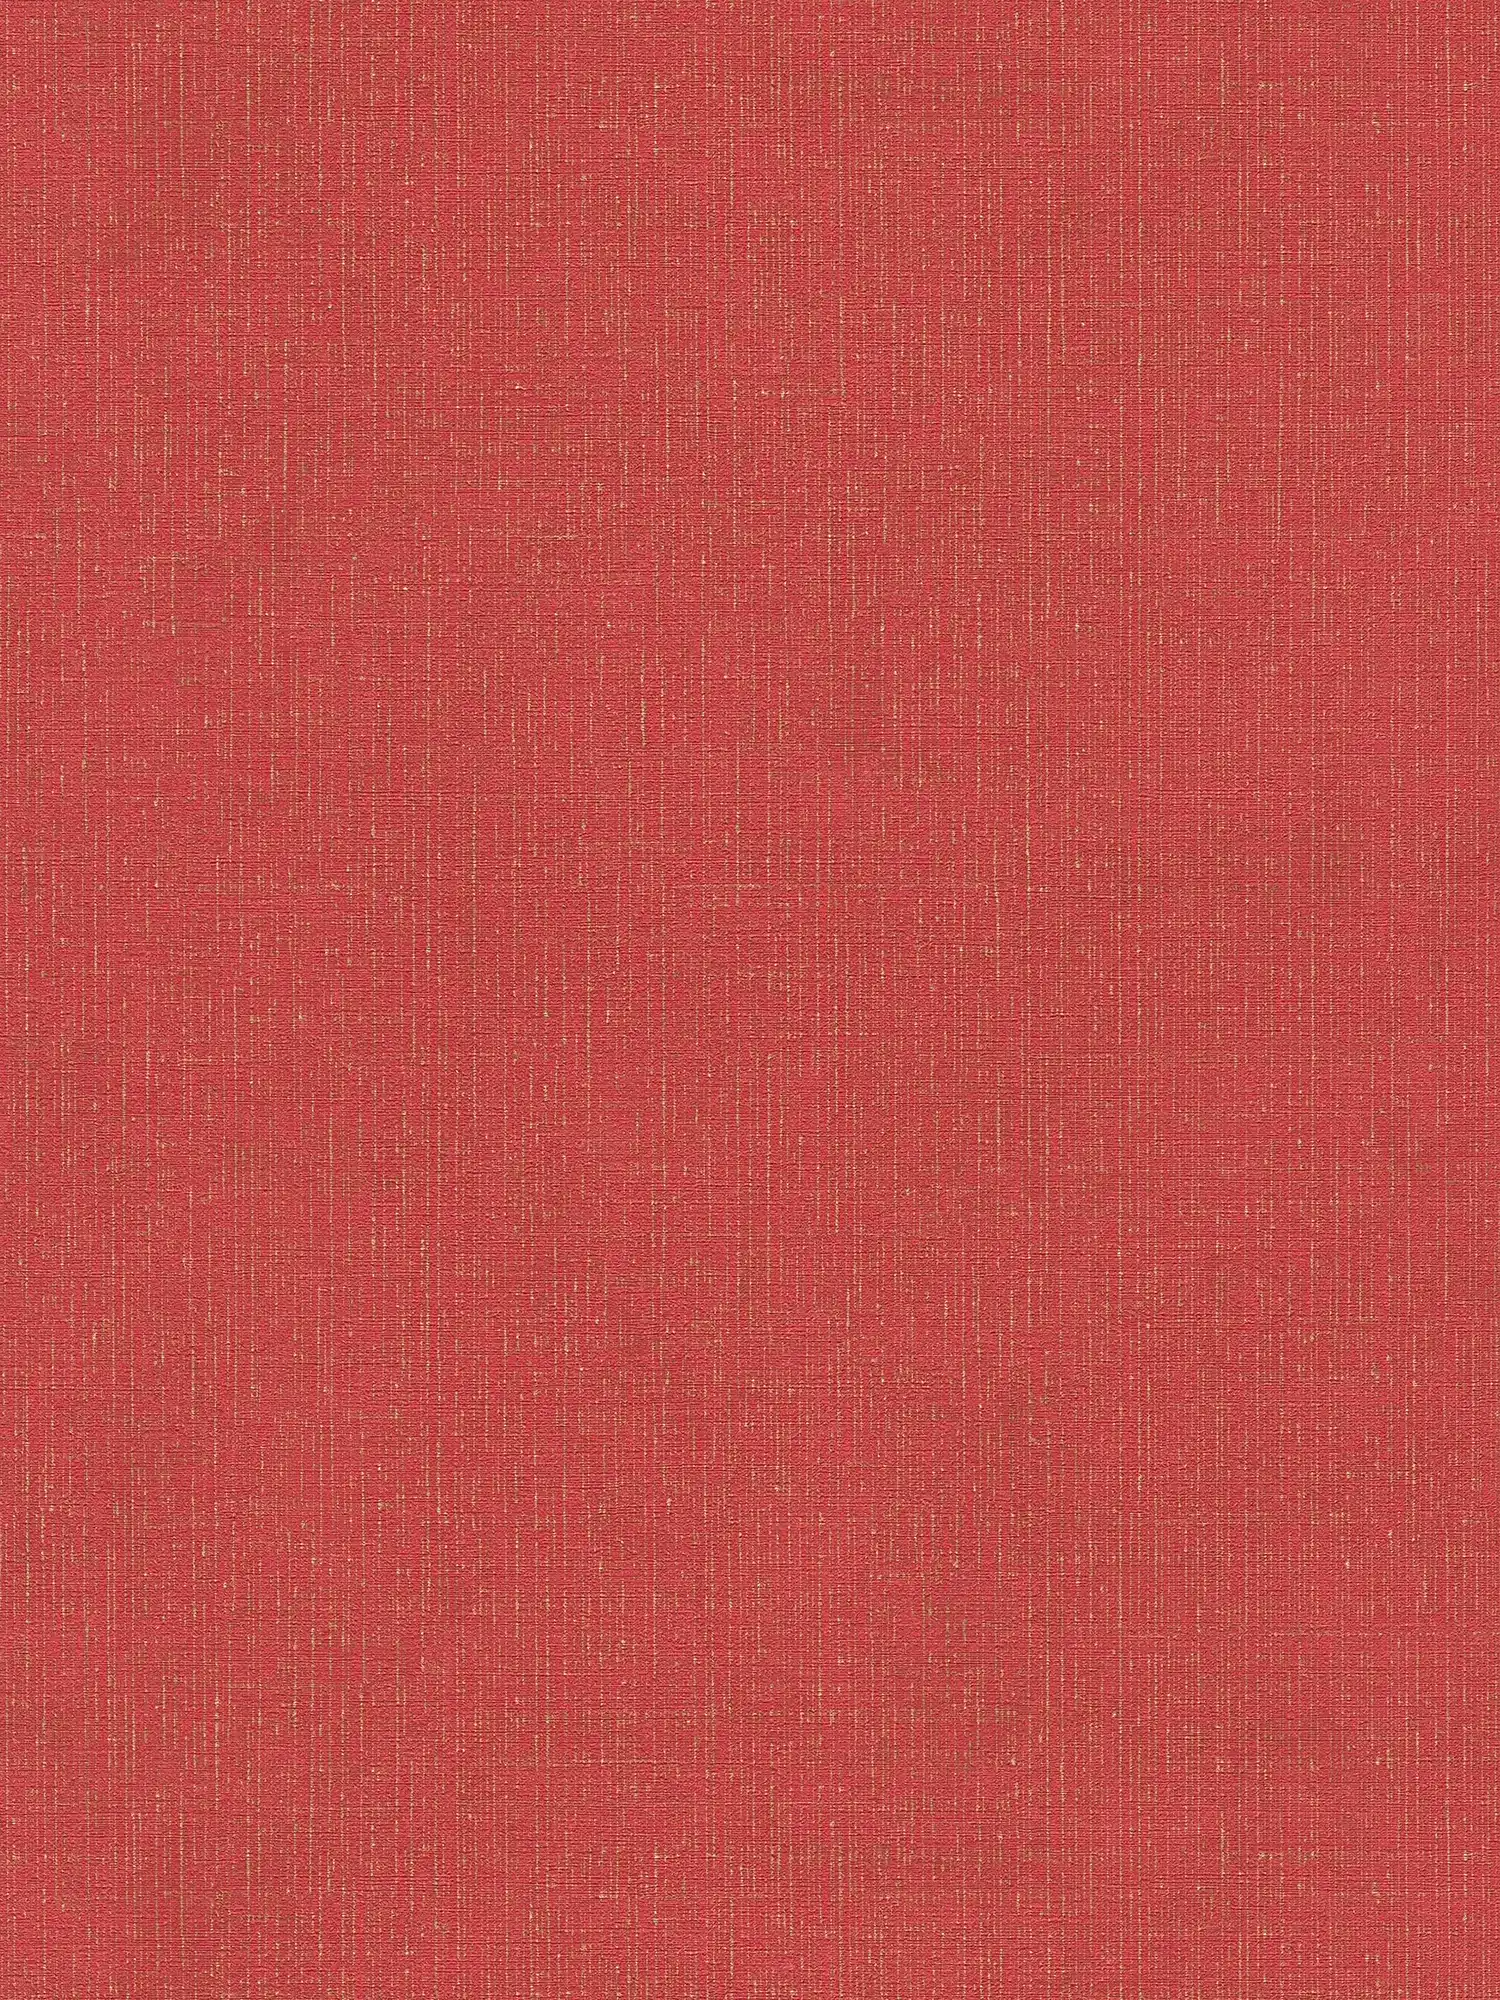 Carta da parati rossa screziata d'oro con ottica tessile - metallizzata, rossa
